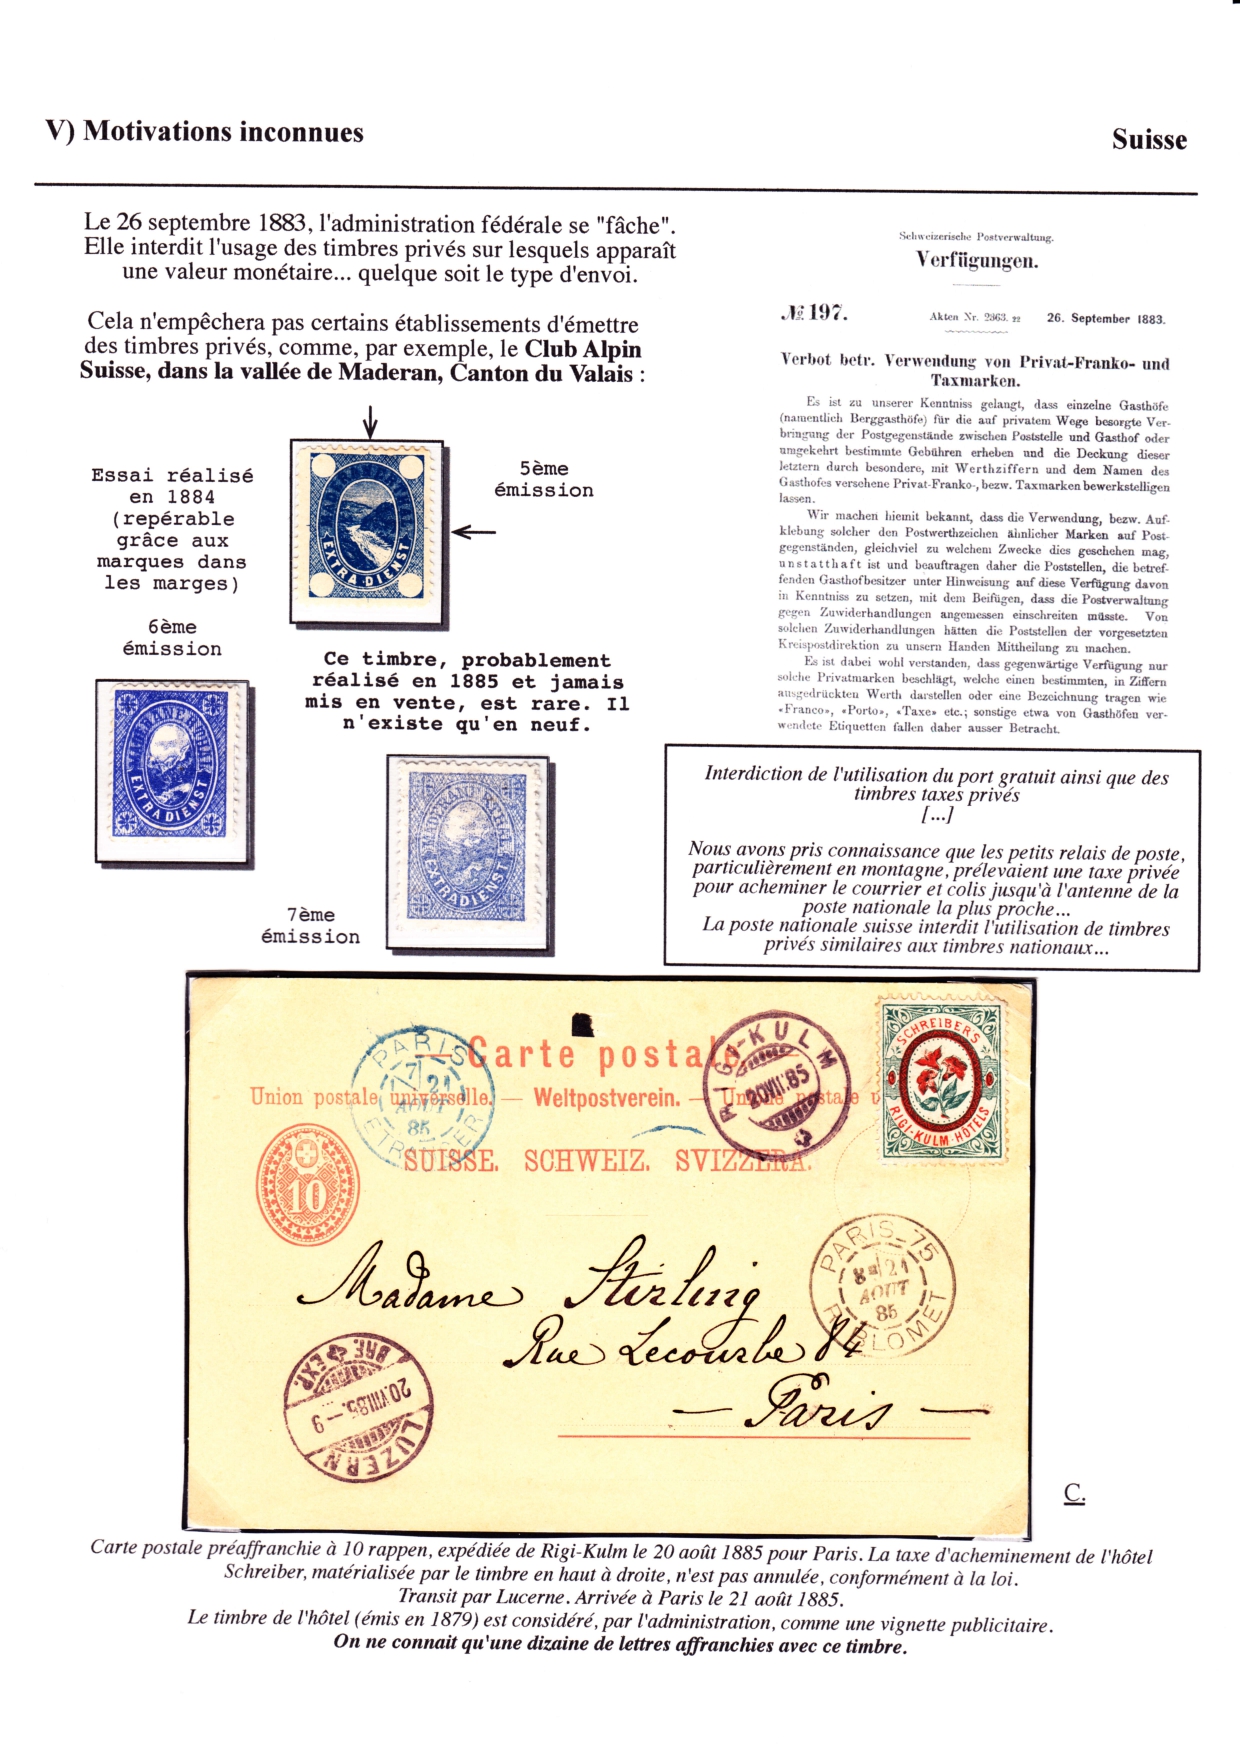 Les d��buts des timbres sans valeur faciale apparente p. 77